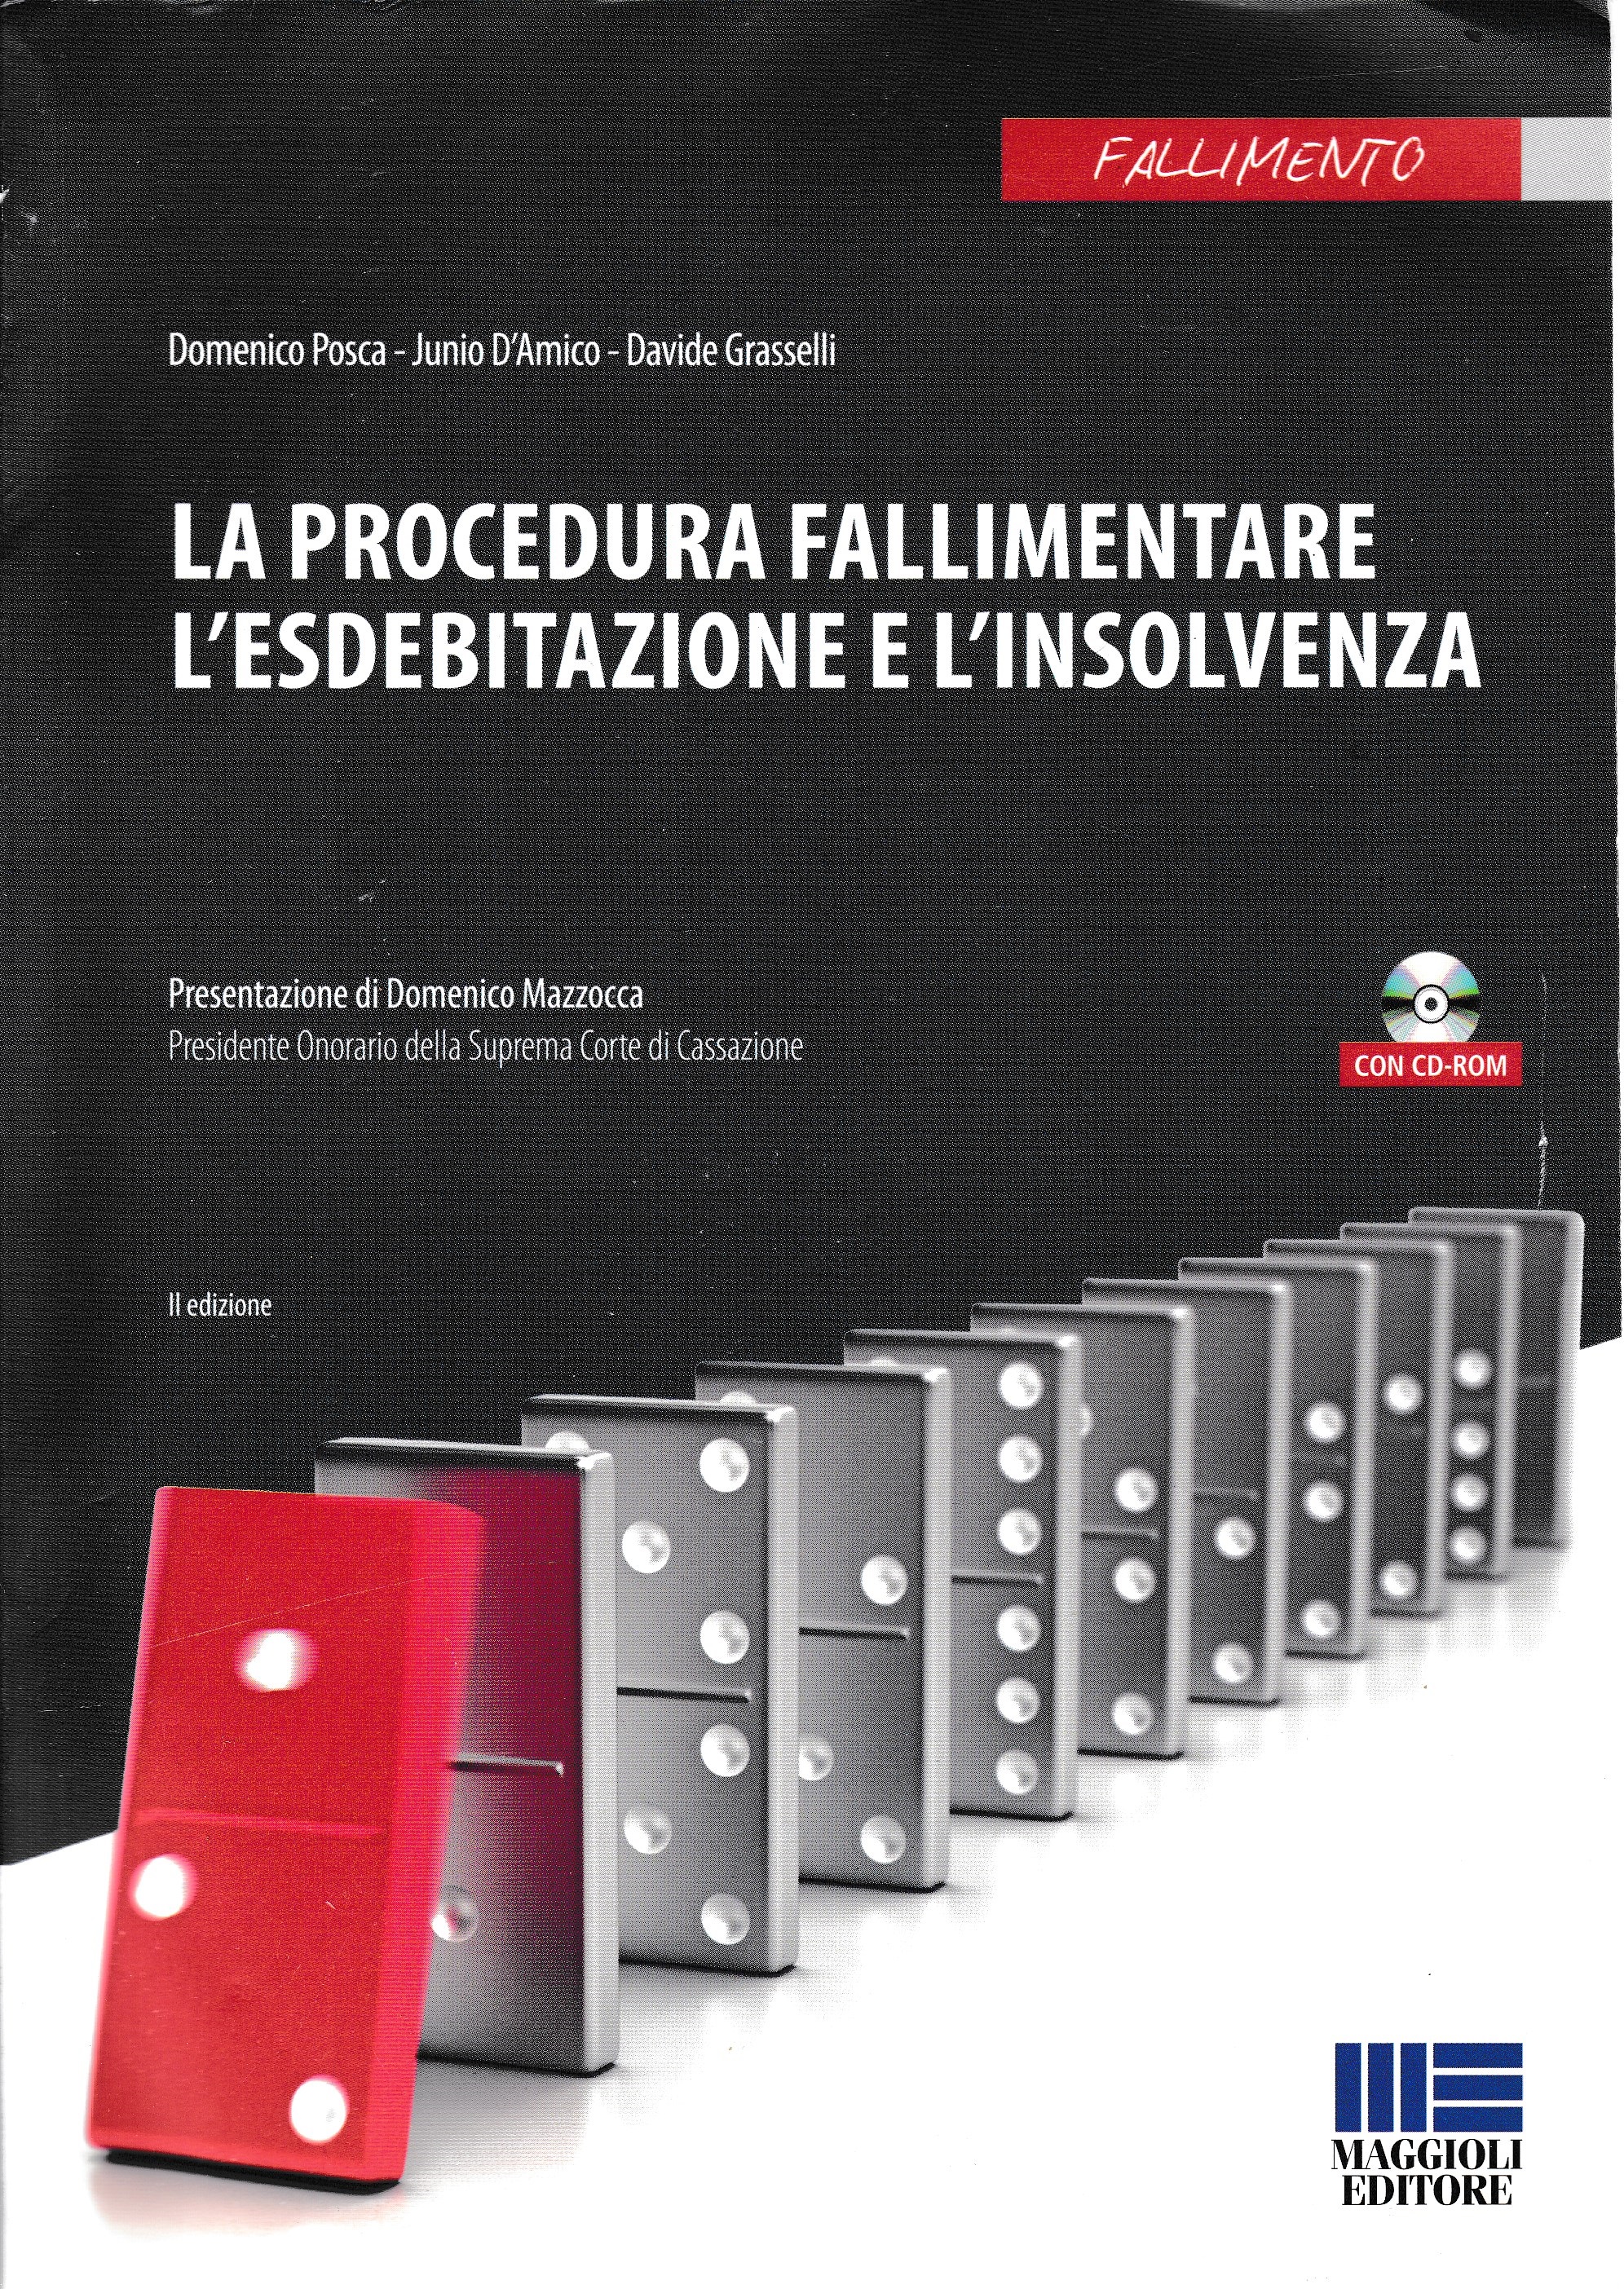 La procedura fallimentare l'esdebitazione e l'insolvenza. Con CD-ROM - Domenico Posca, Junio Valerio D'Amico, Davide Grasselli